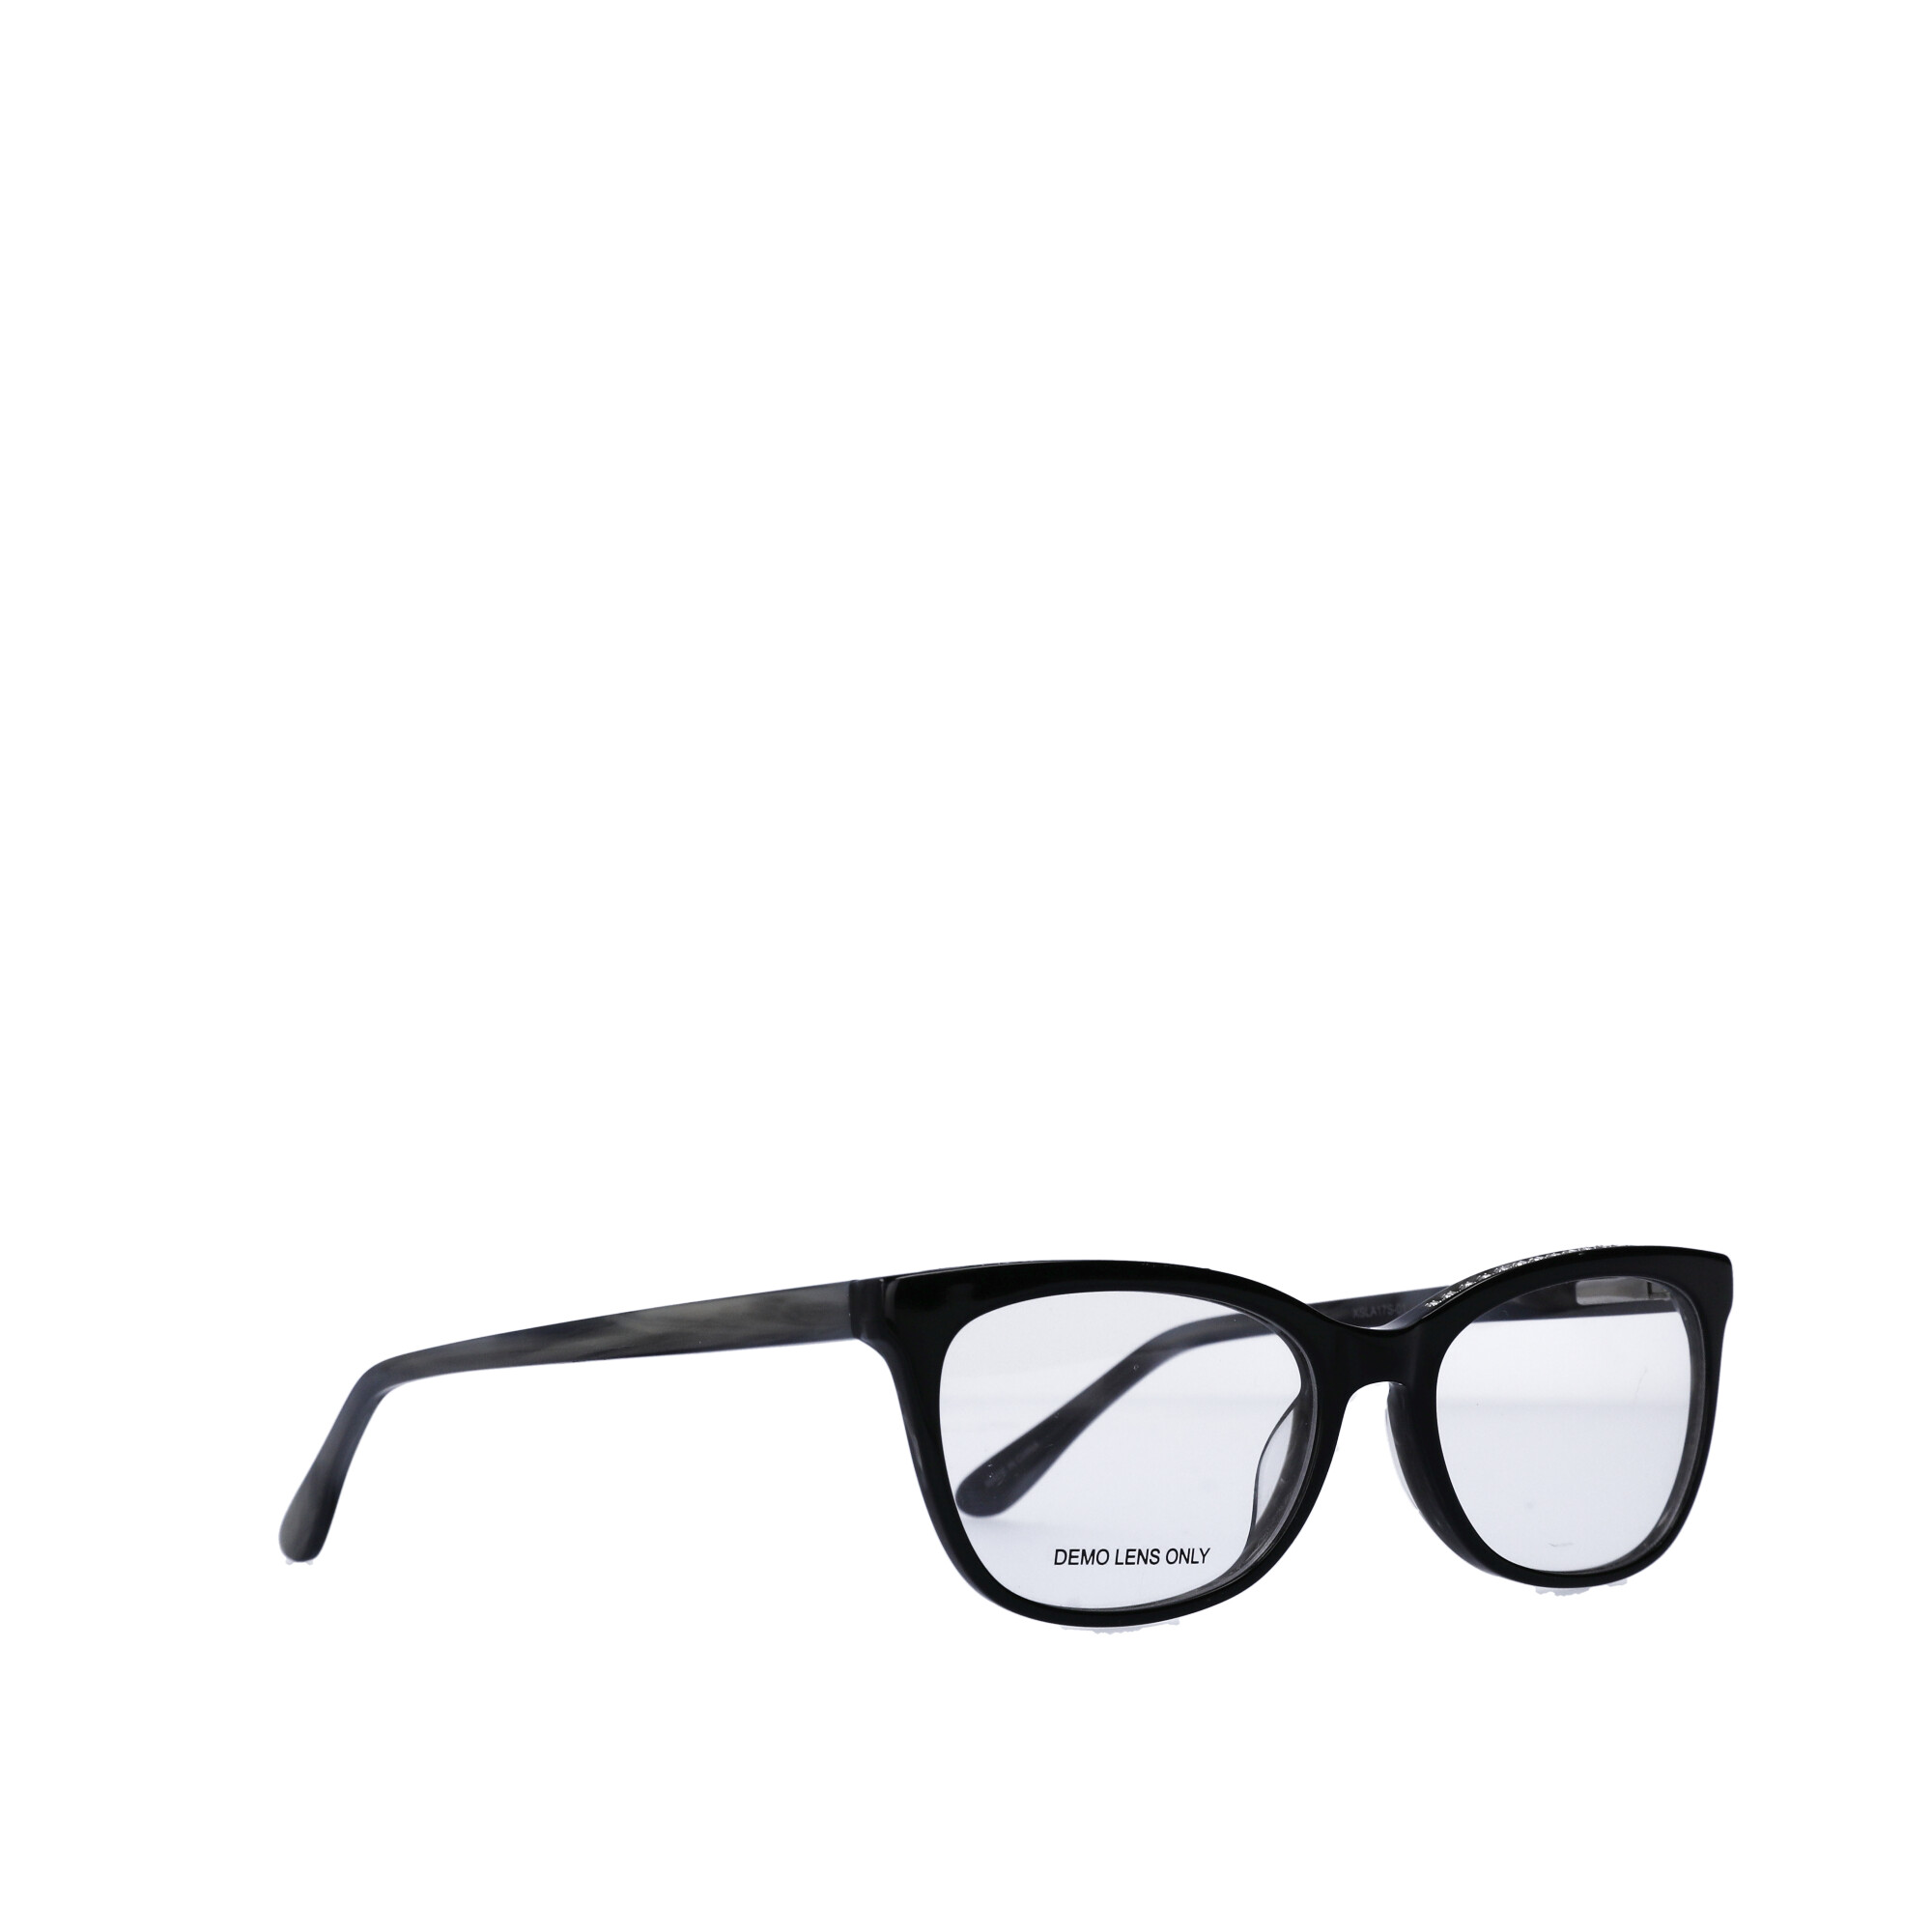 Designer Frames for Less Women's Rx'able Eyeglasses, Black - image 4 of 13